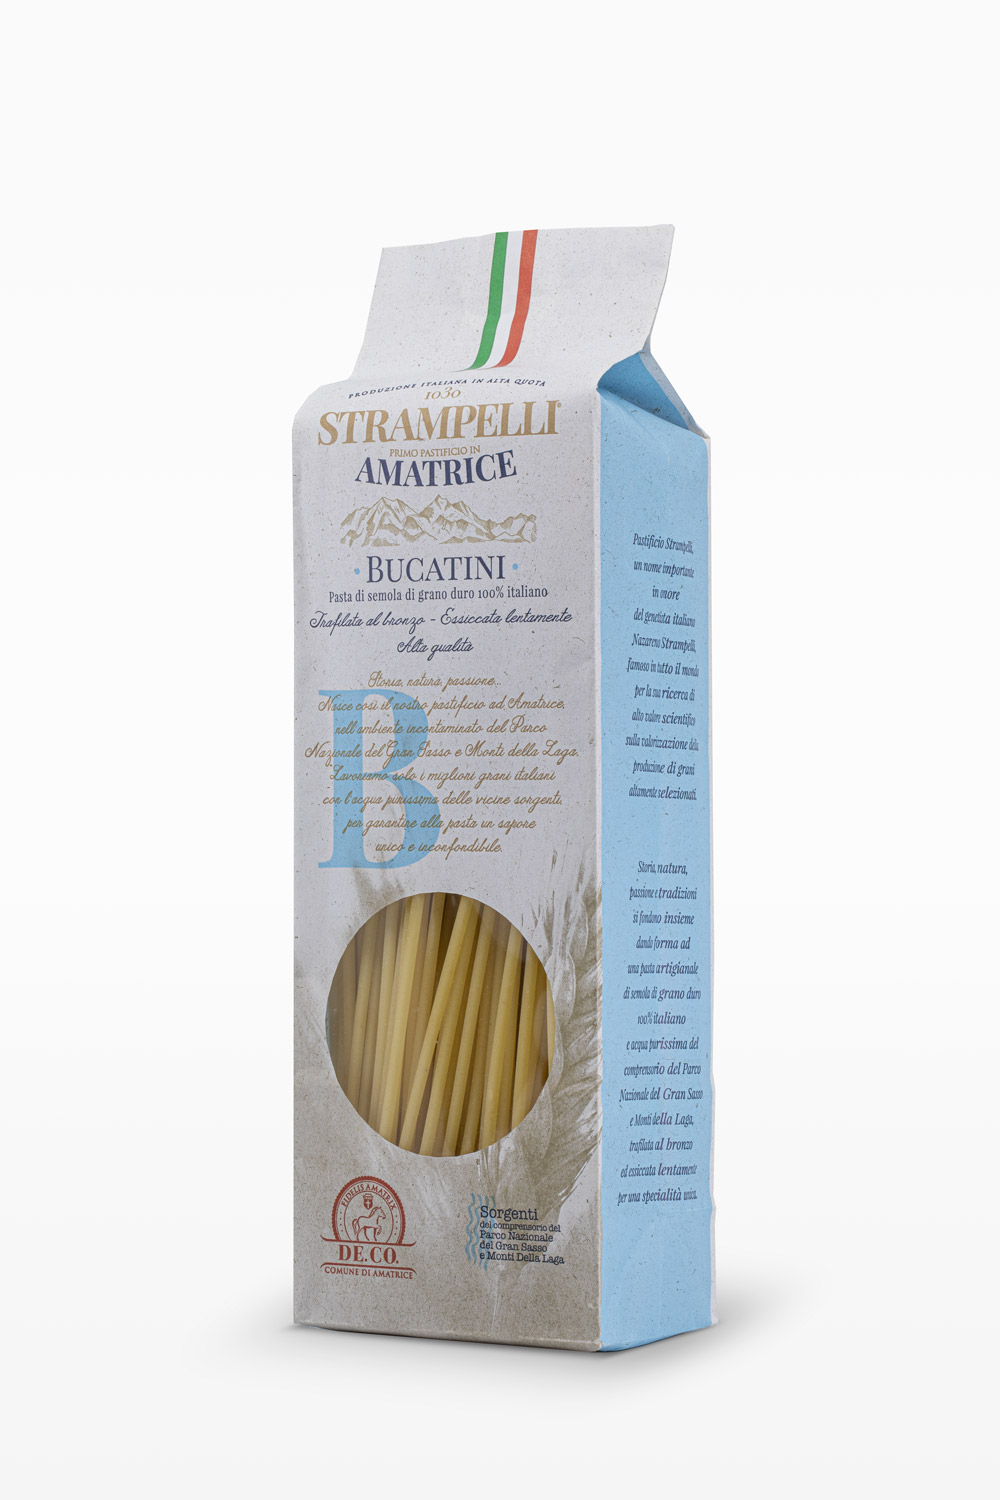 Bucatini - Pasta di semola di grano duro, ruvida e porosa, grano 100% italiano, essiccazione lenta a bassa temperatura.